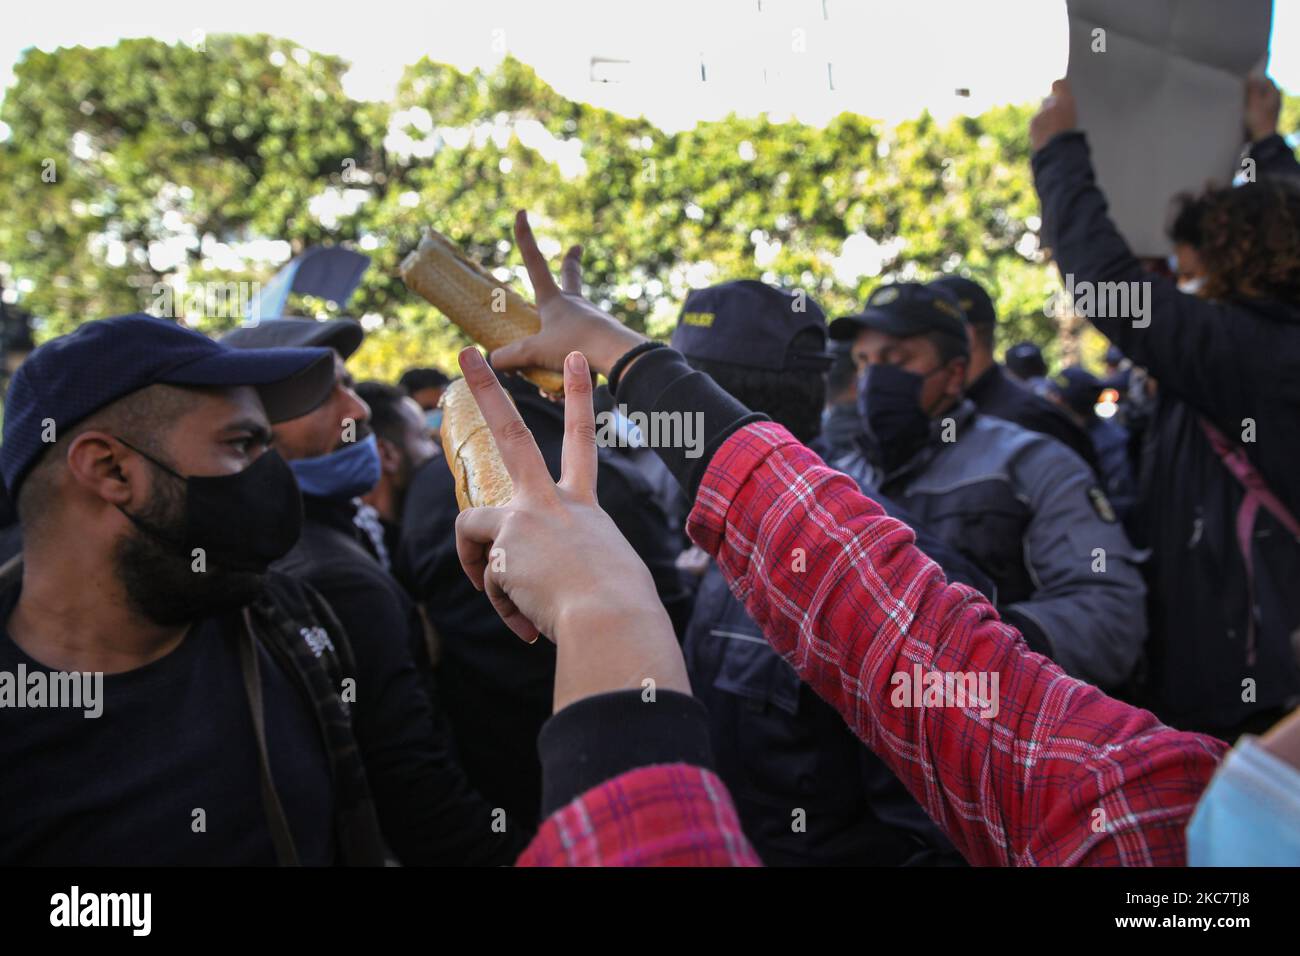 Una joven manifestante levanta un trozo de pan mientras hace cantar la victoria durante una manifestación anti-gubernamental celebrada en la avenida Habib Bourguiba, en la capital Túnez, Túnez, el 19 de enero de 2021, para protestar contra el gobierno del primer ministro Hichem Mechichi, Y en apoyo de los movimientos de protesta que golpearon a Túnez en varias ciudades de la noche a la mañana en los últimos días. Los manifestantes se enfrentaron con las fuerzas de seguridad, quienes dispararon gas lacrimógeno y utilizaron spray de pimienta para dispersarlos. También reclamaron la liberación de jóvenes detenidos por la policía durante las últimas protestas, y de deno Foto de stock